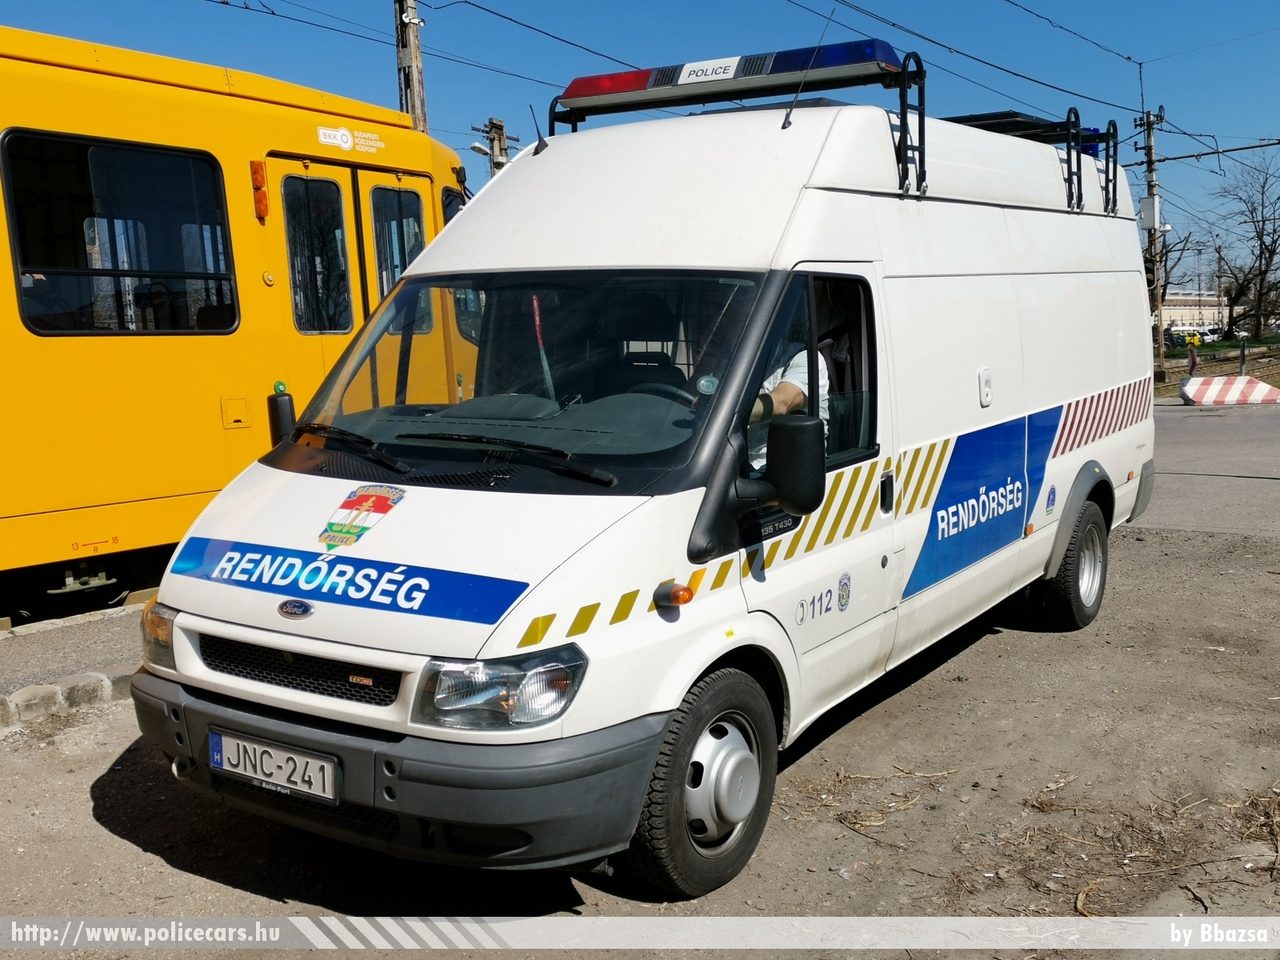 Ford Transit, fotó: Bbazsa
Keywords: rendőr rendőrautó rendőrség magyar Magyarország hungarian Hungary police policecar JNC-241